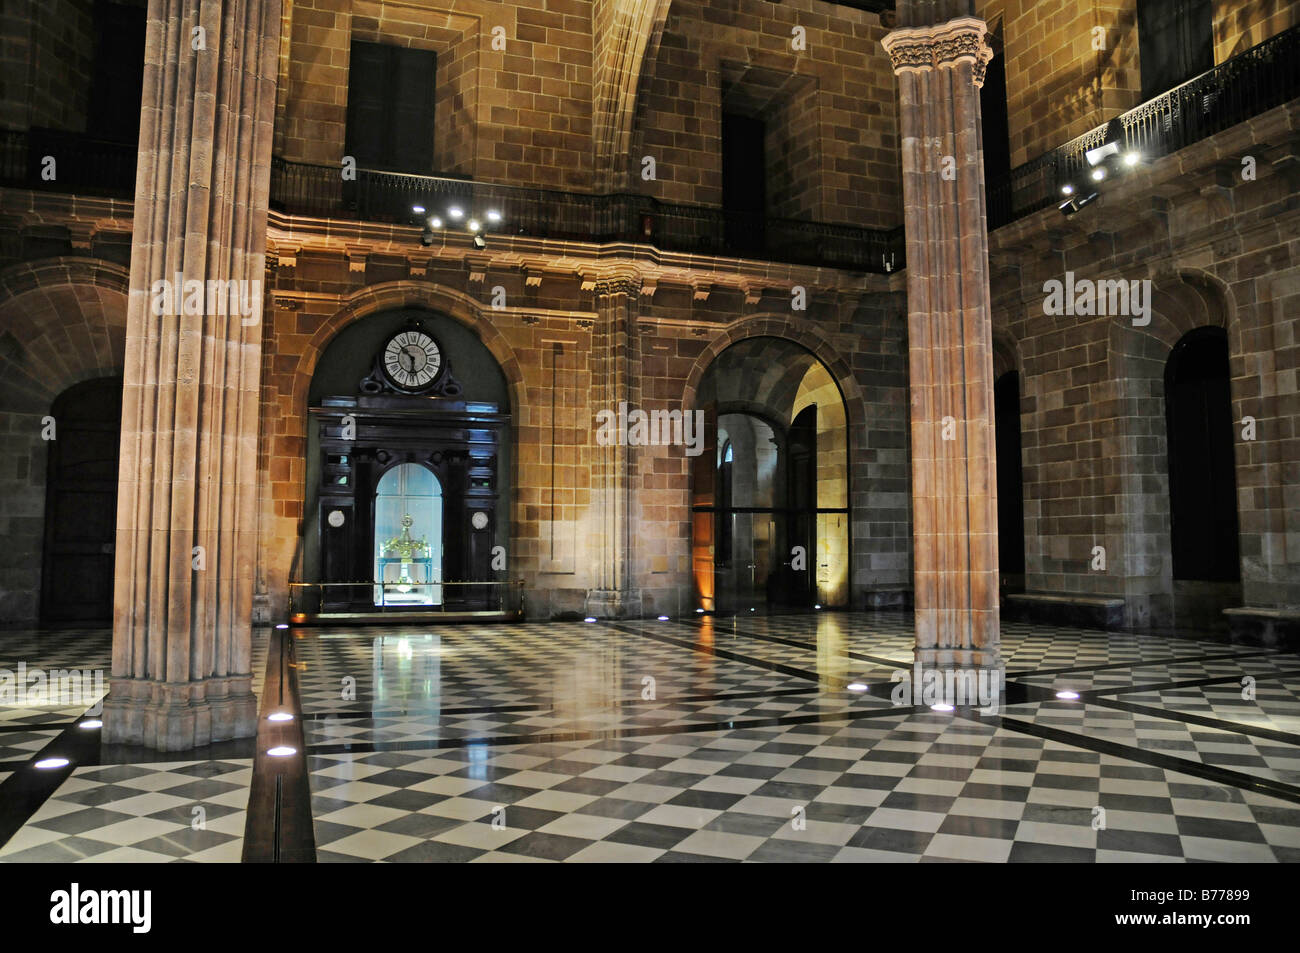 Eingangshalle, Salon, Palacio De La Llotja de Mar, ehemalige Börse, Barcelona, Katalonien, Spanien, Europa Stockfoto